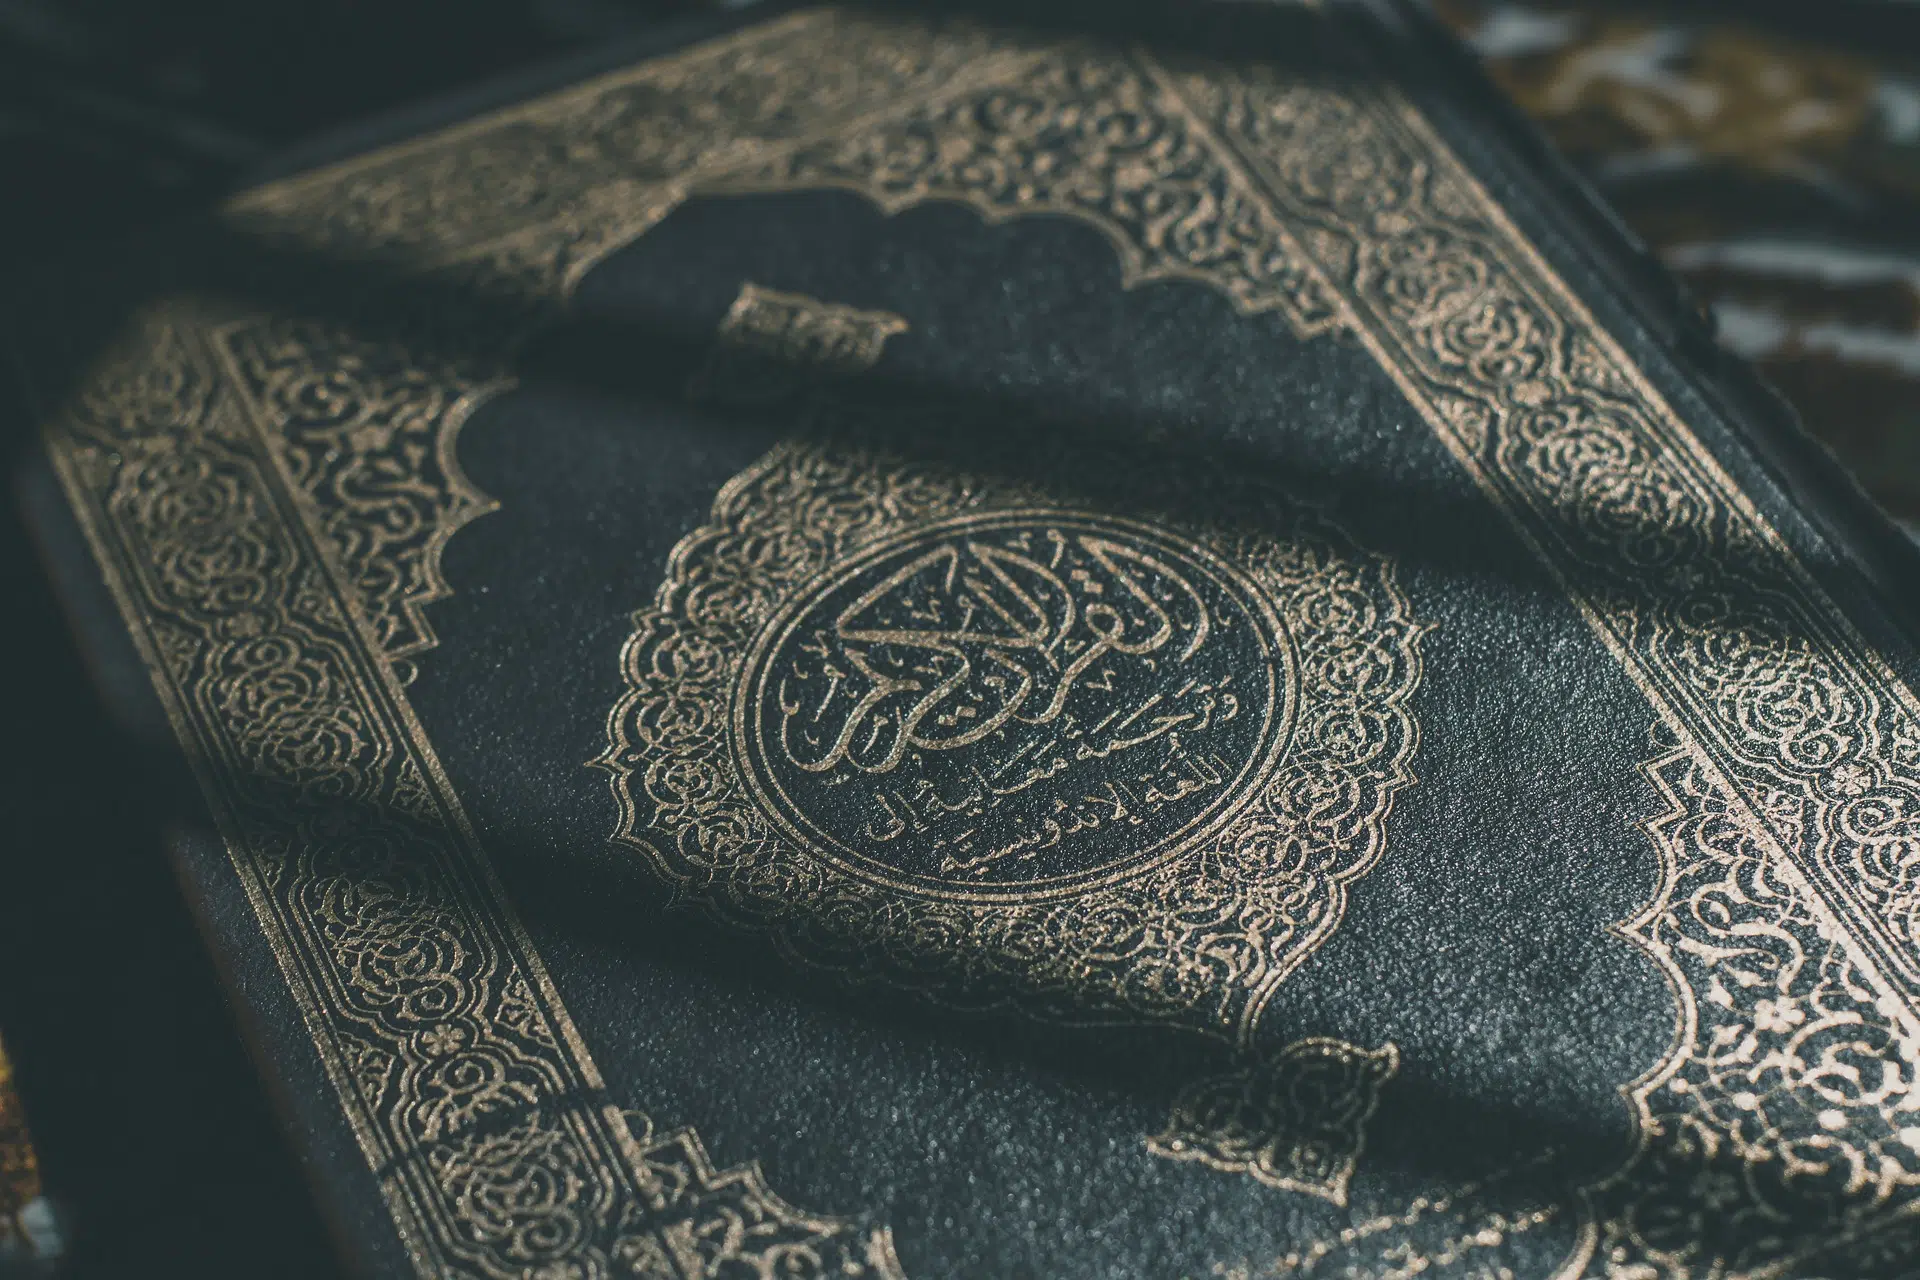 Tapa del Corán, libro sagrado del islam